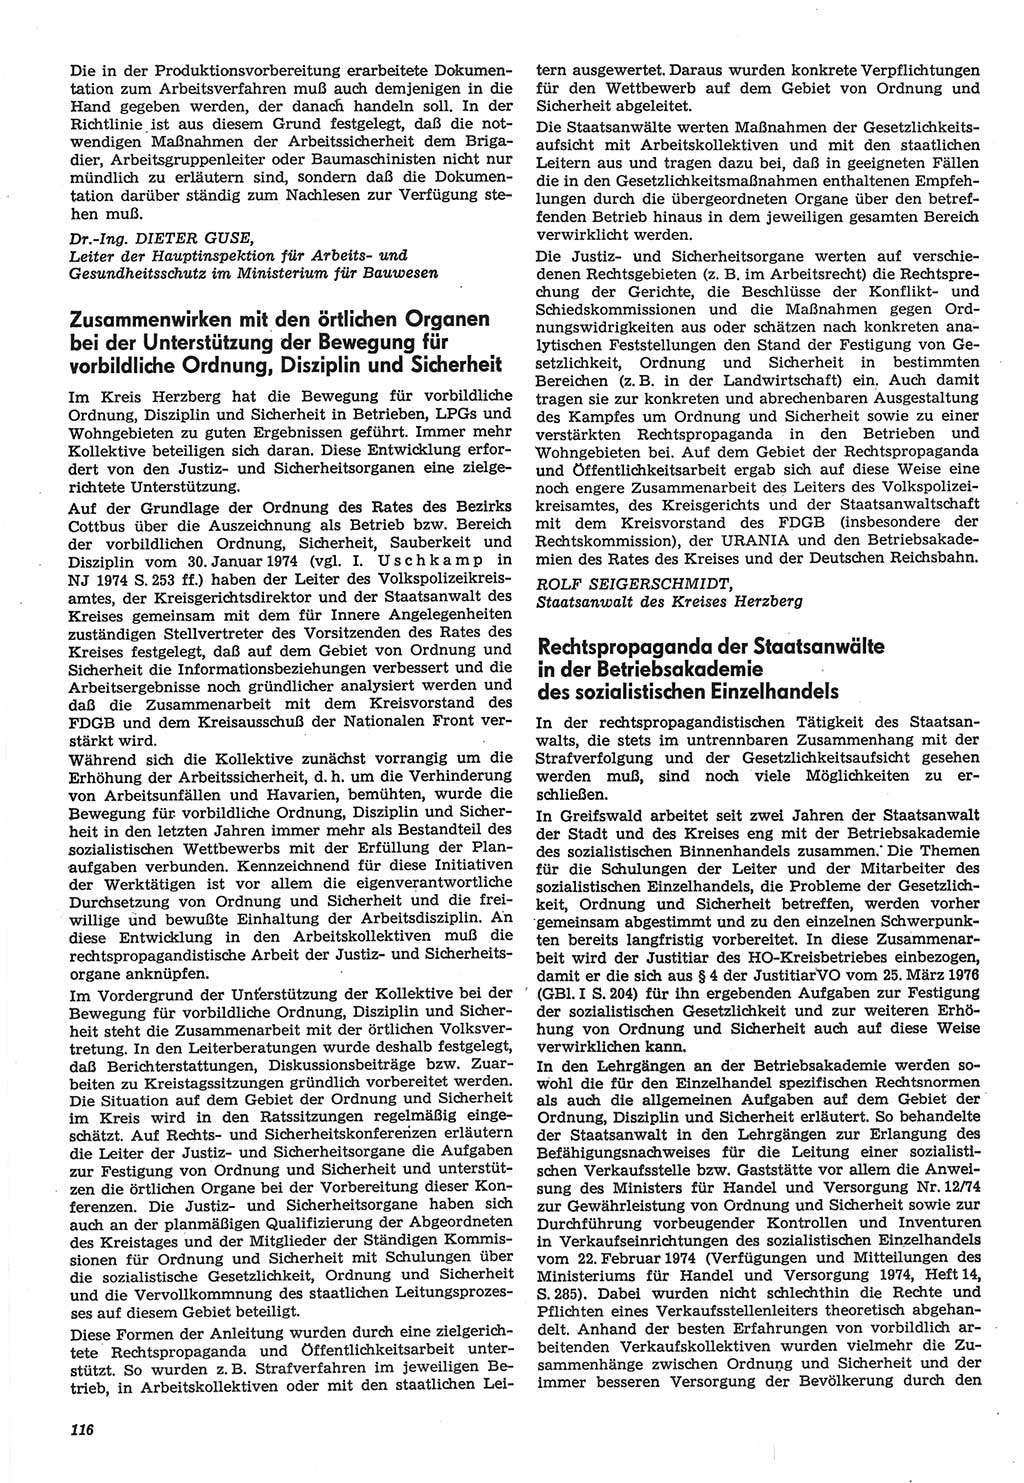 Neue Justiz (NJ), Zeitschrift für Recht und Rechtswissenschaft-Zeitschrift, sozialistisches Recht und Gesetzlichkeit, 31. Jahrgang 1977, Seite 116 (NJ DDR 1977, S. 116)